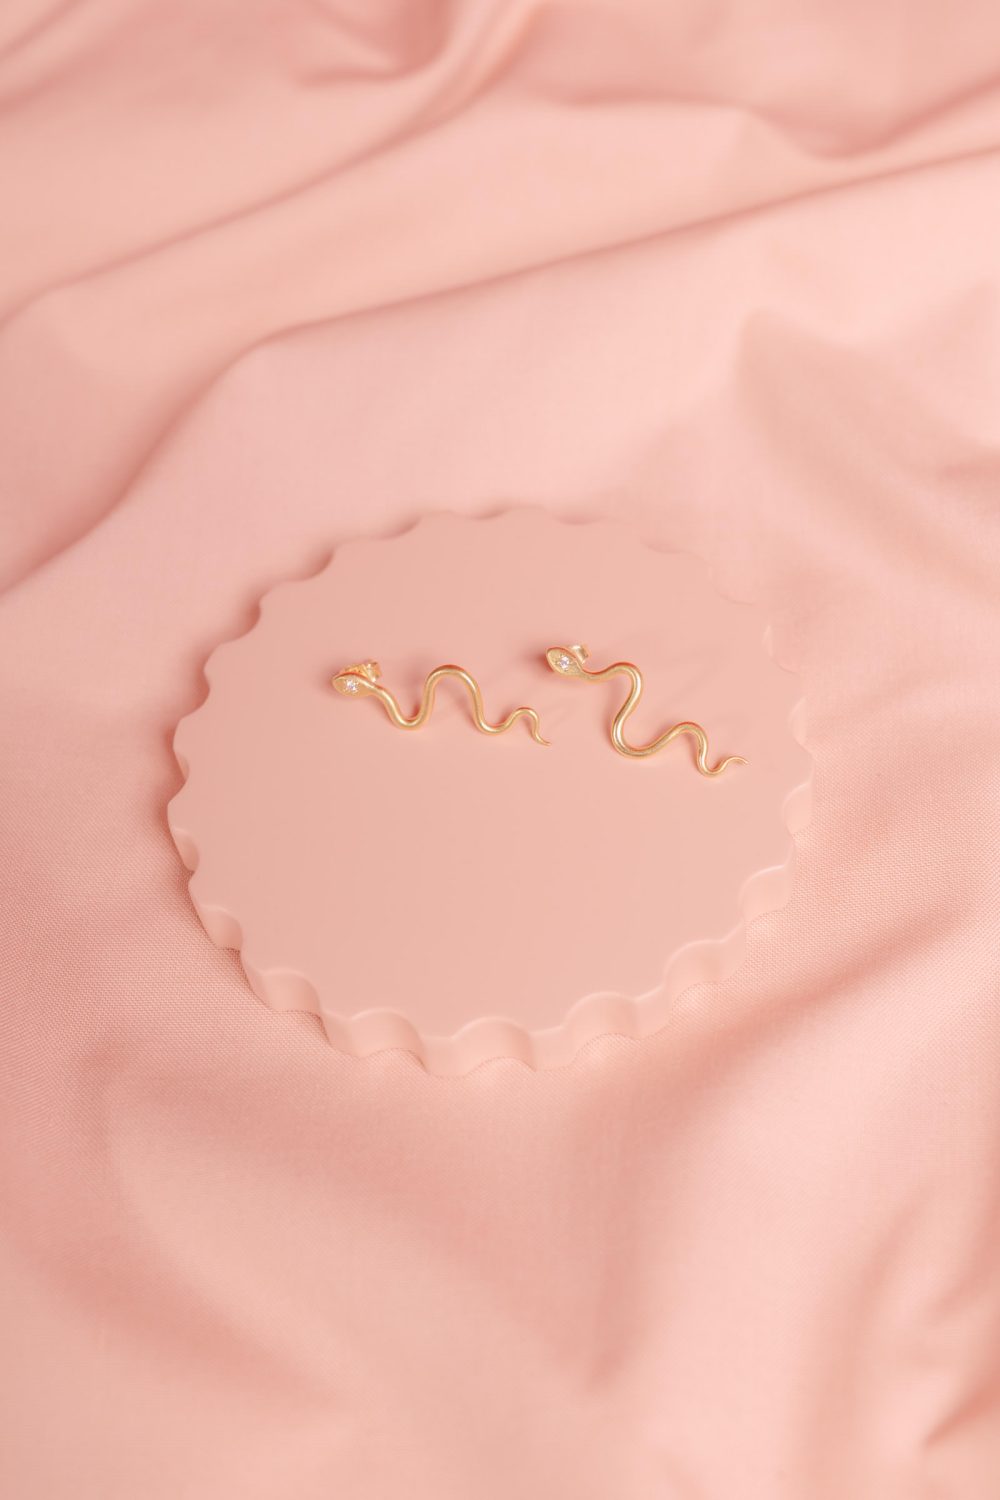 Produktfotografie Schmuck Ohrring auf rosanem Hintergrund